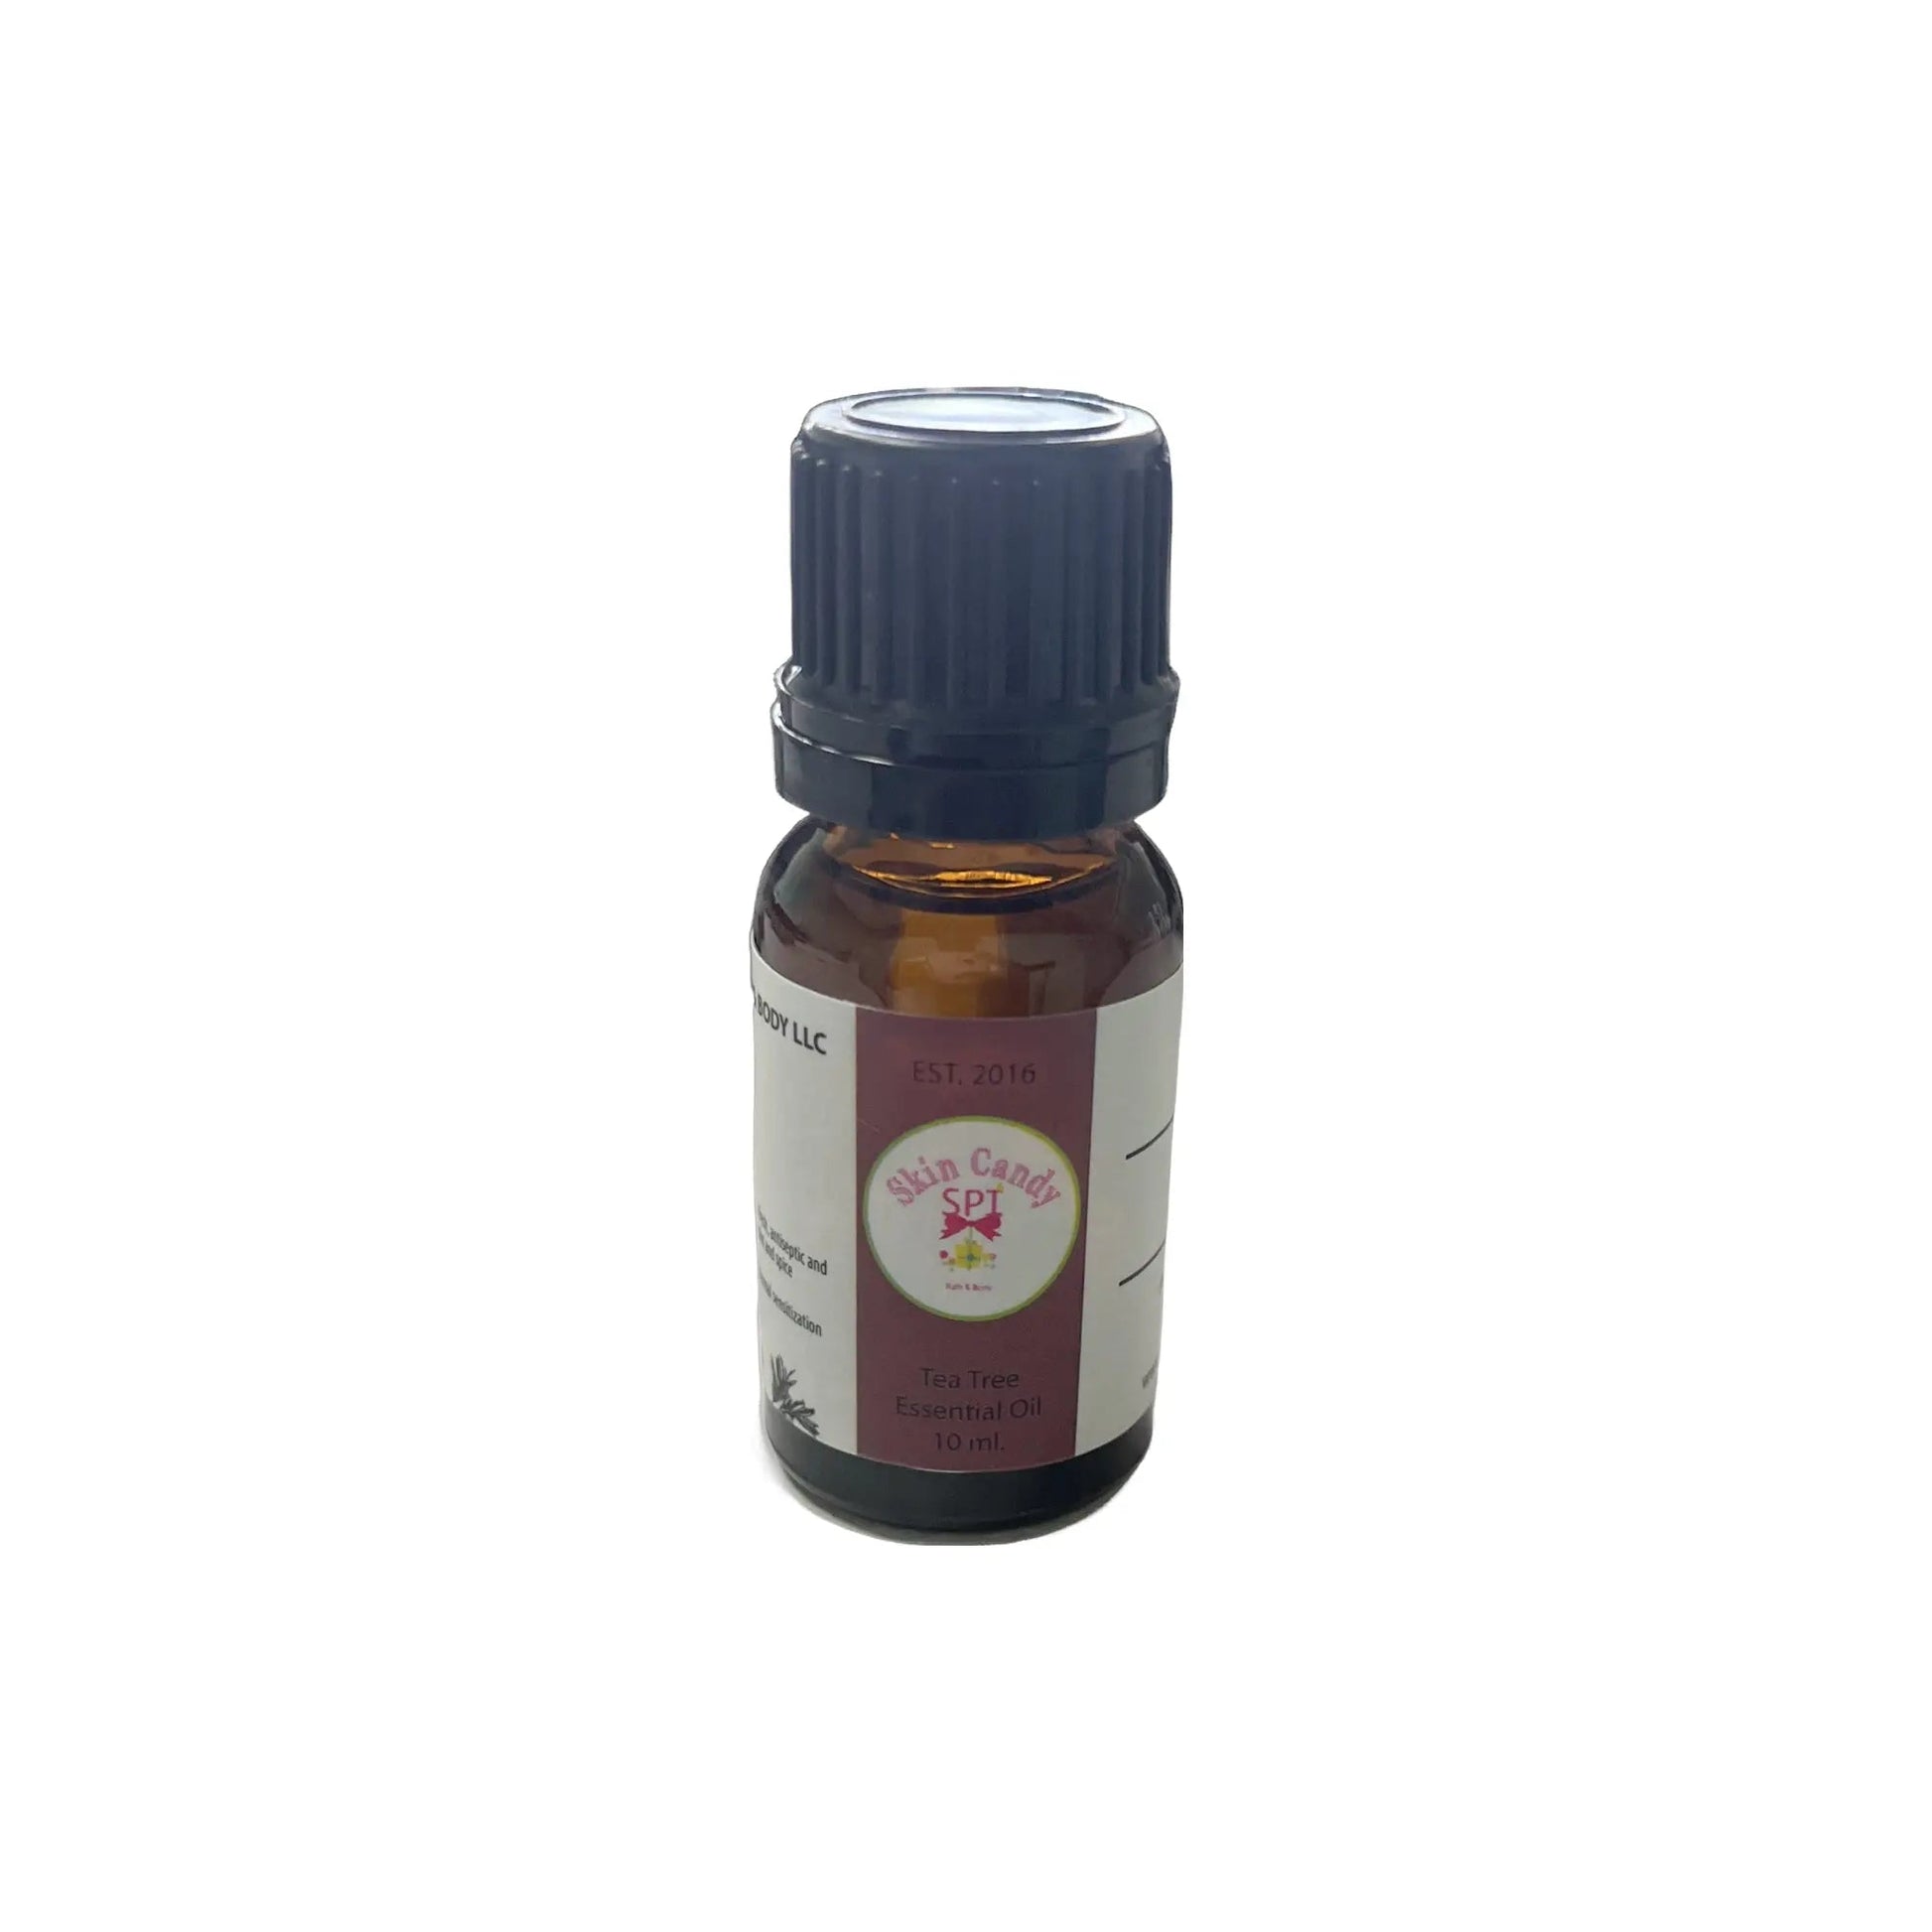 Tea Tree Essential Oil 10 ml. - Skin Candy Bath & Body